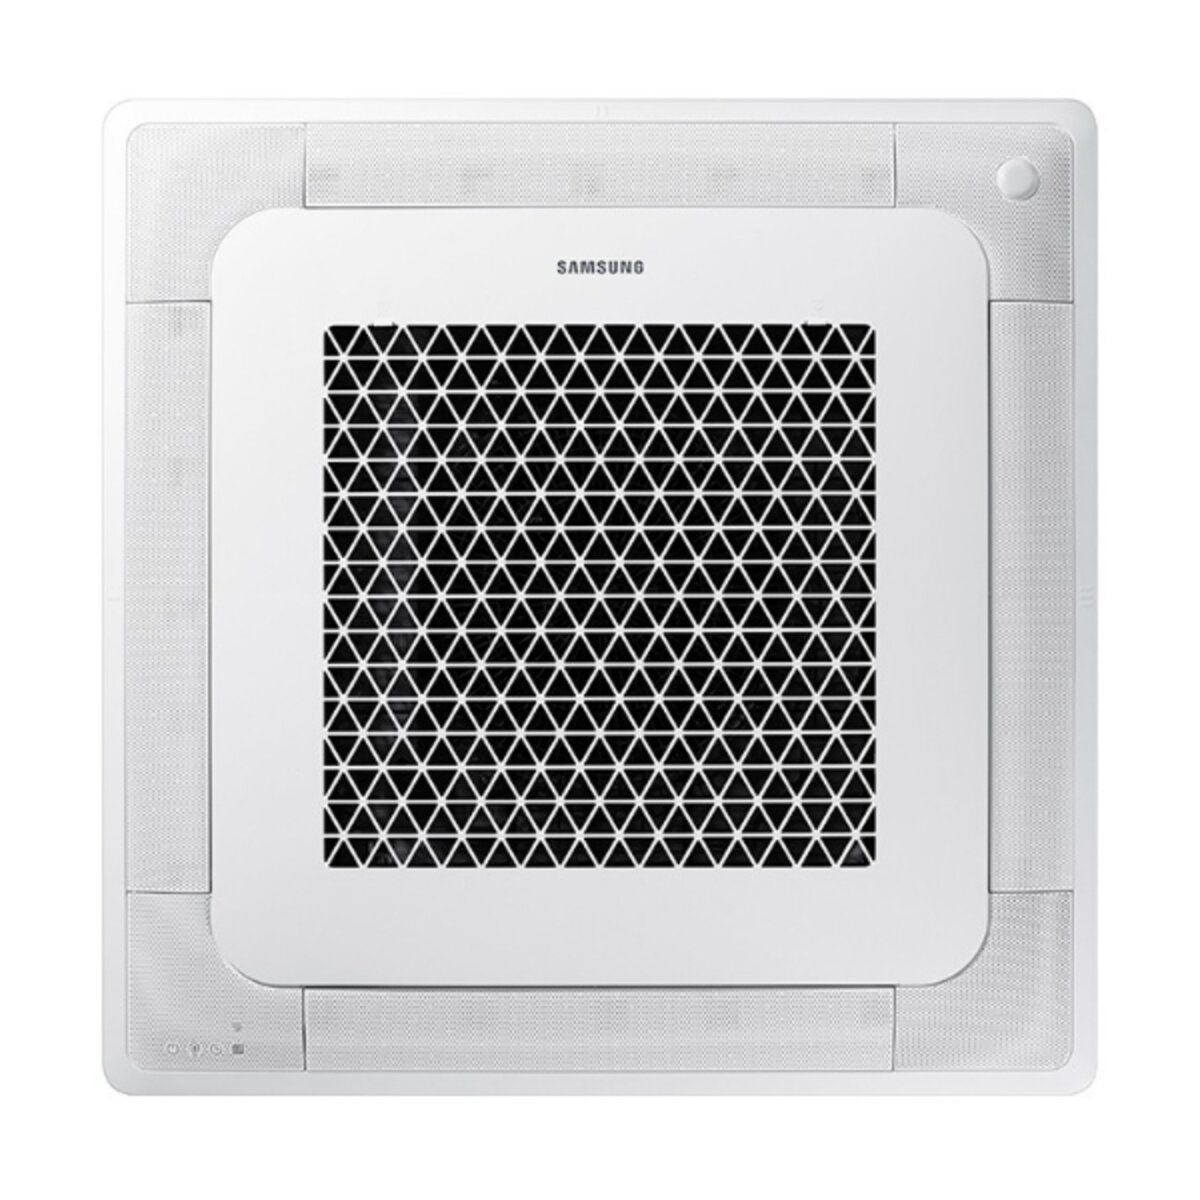 Samsung air conditioner Cassette Windfree penta split 9000 + 12000 + 12000 + 12000 + 12000 BTU inverter A ++ outdoor unit 10.0 kW